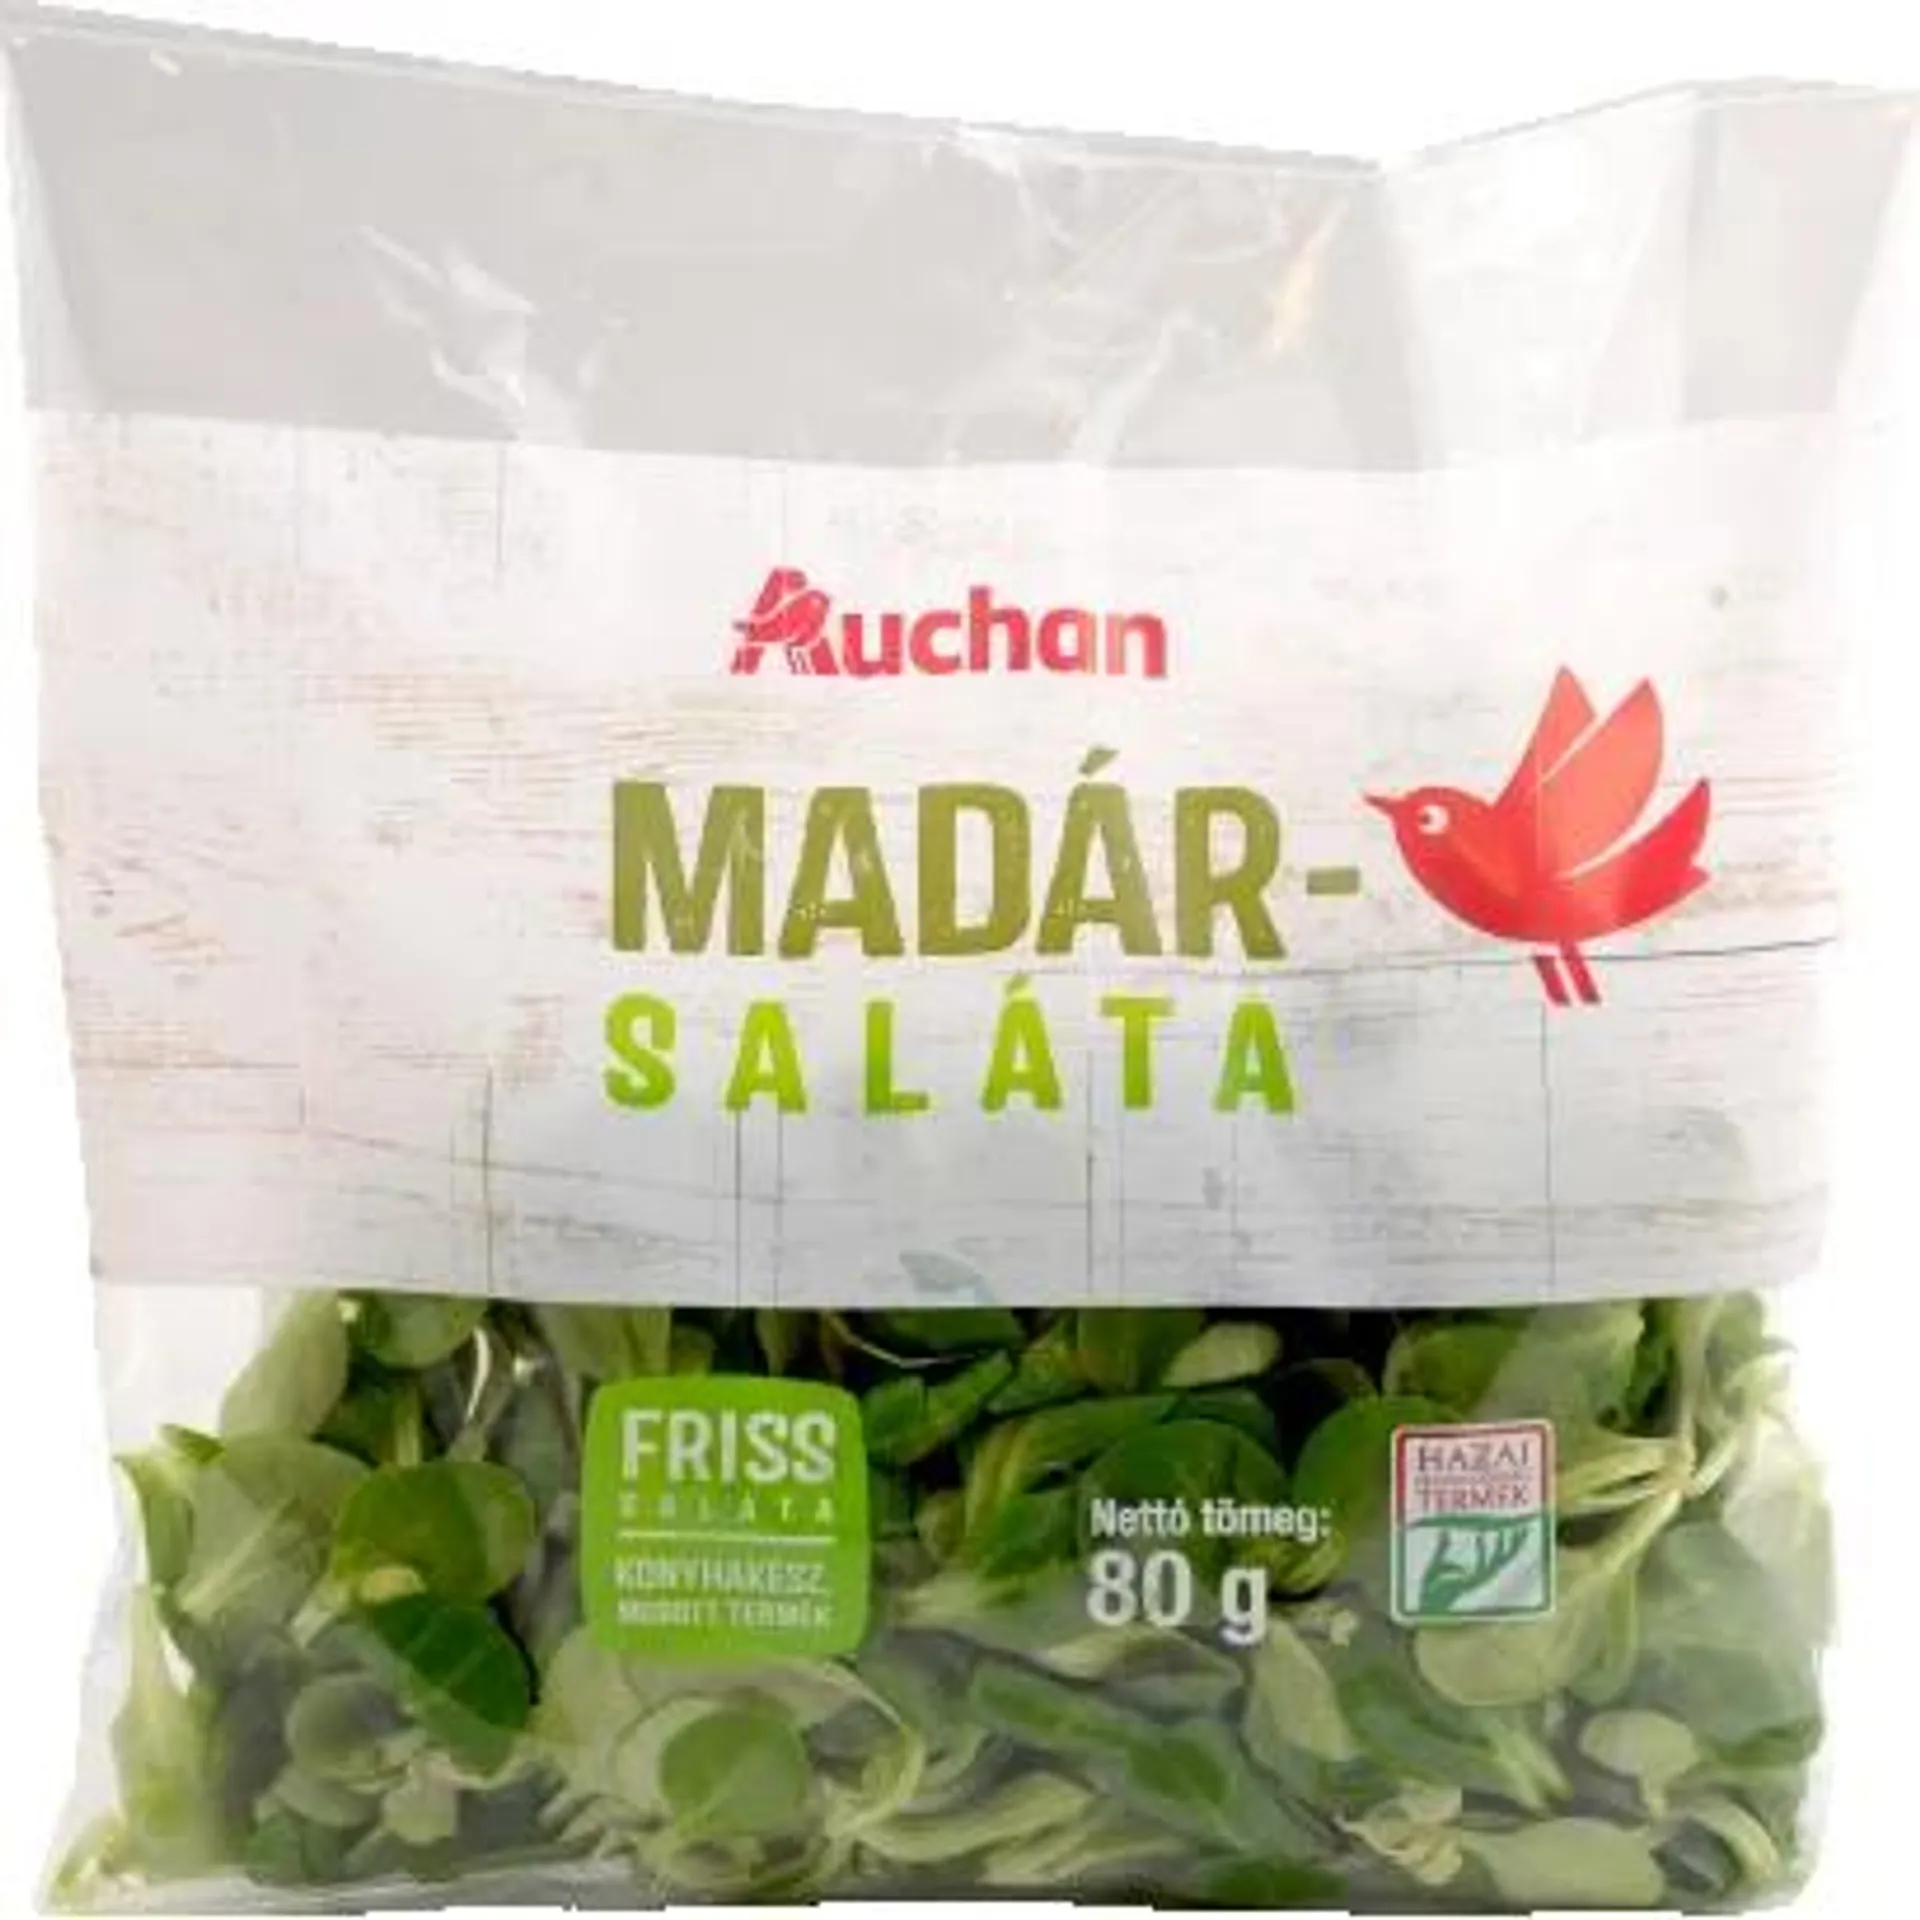 Auchan Nívó Bird Salad 80 g